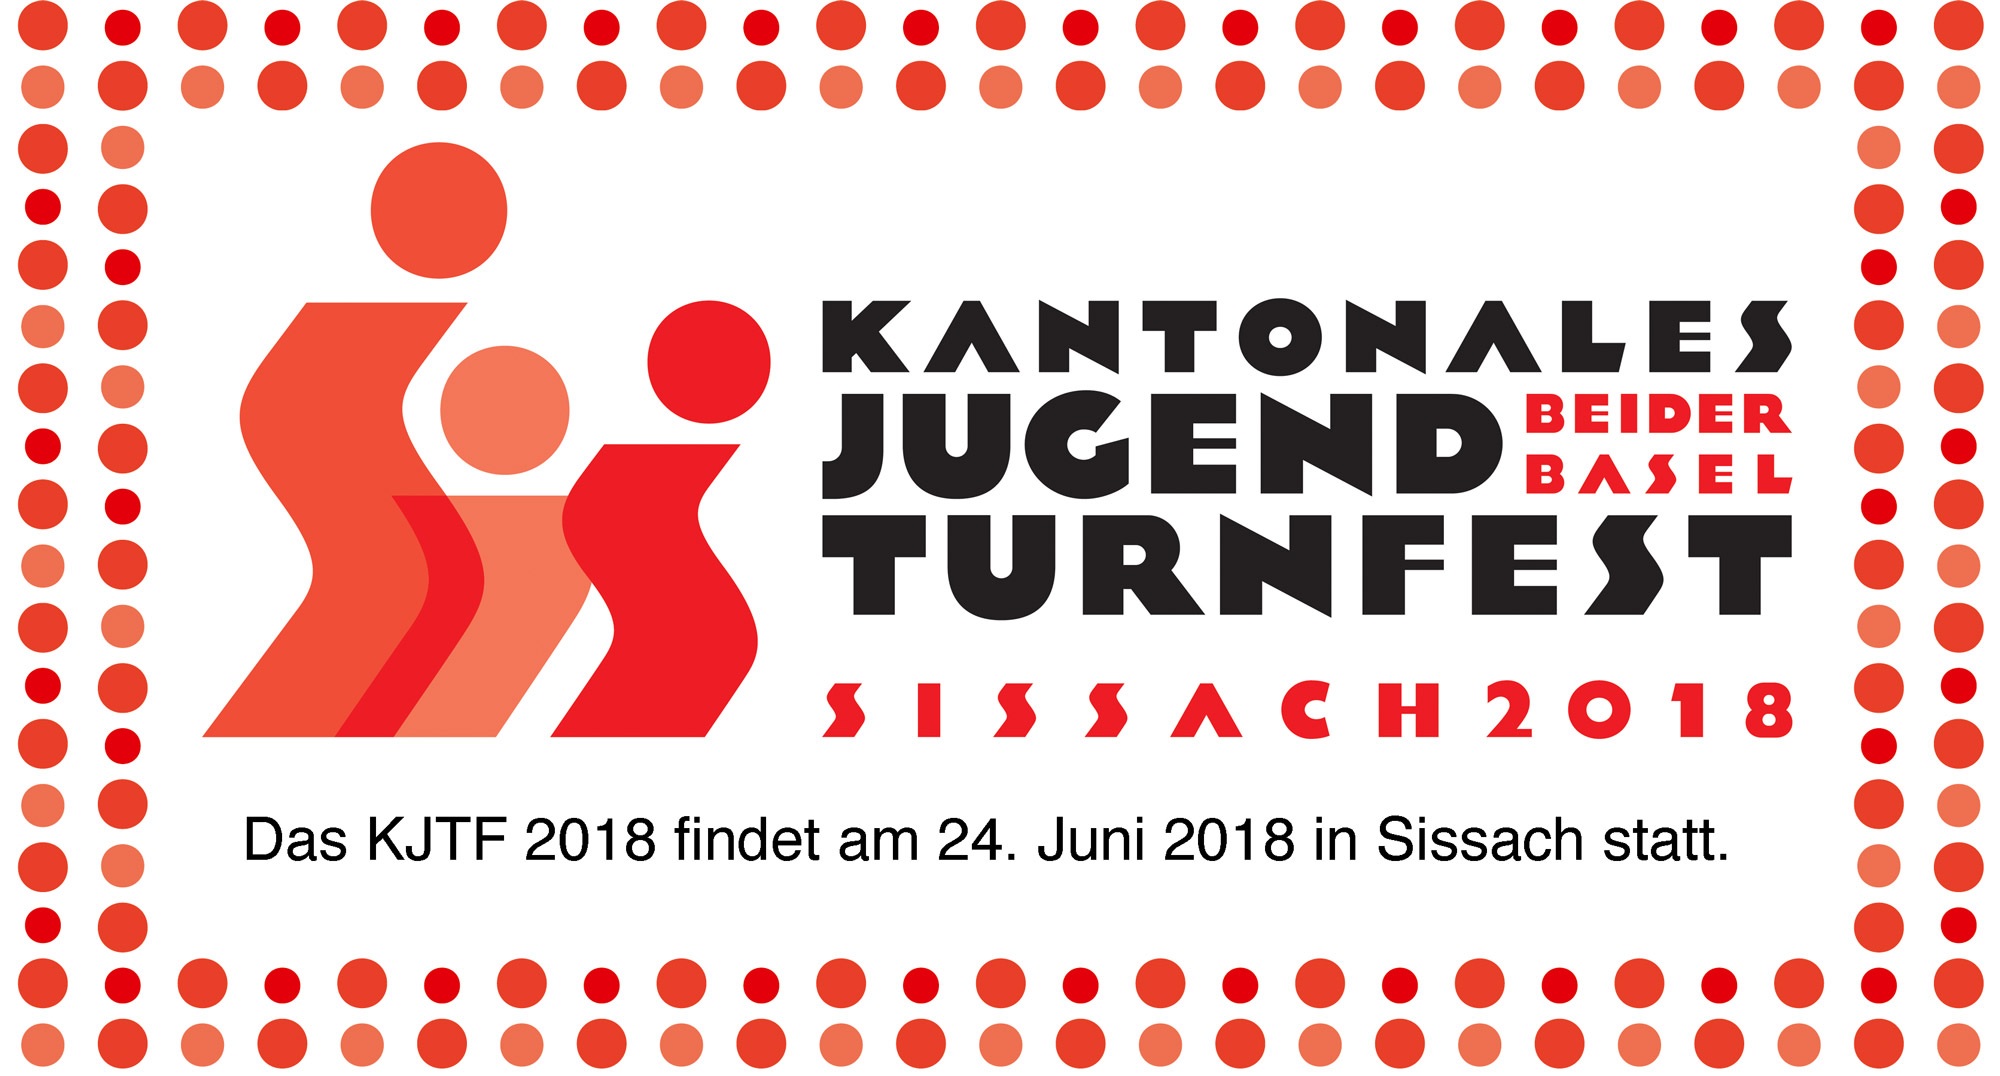 Kantonales Jugendturnfest 2018 in Sissach